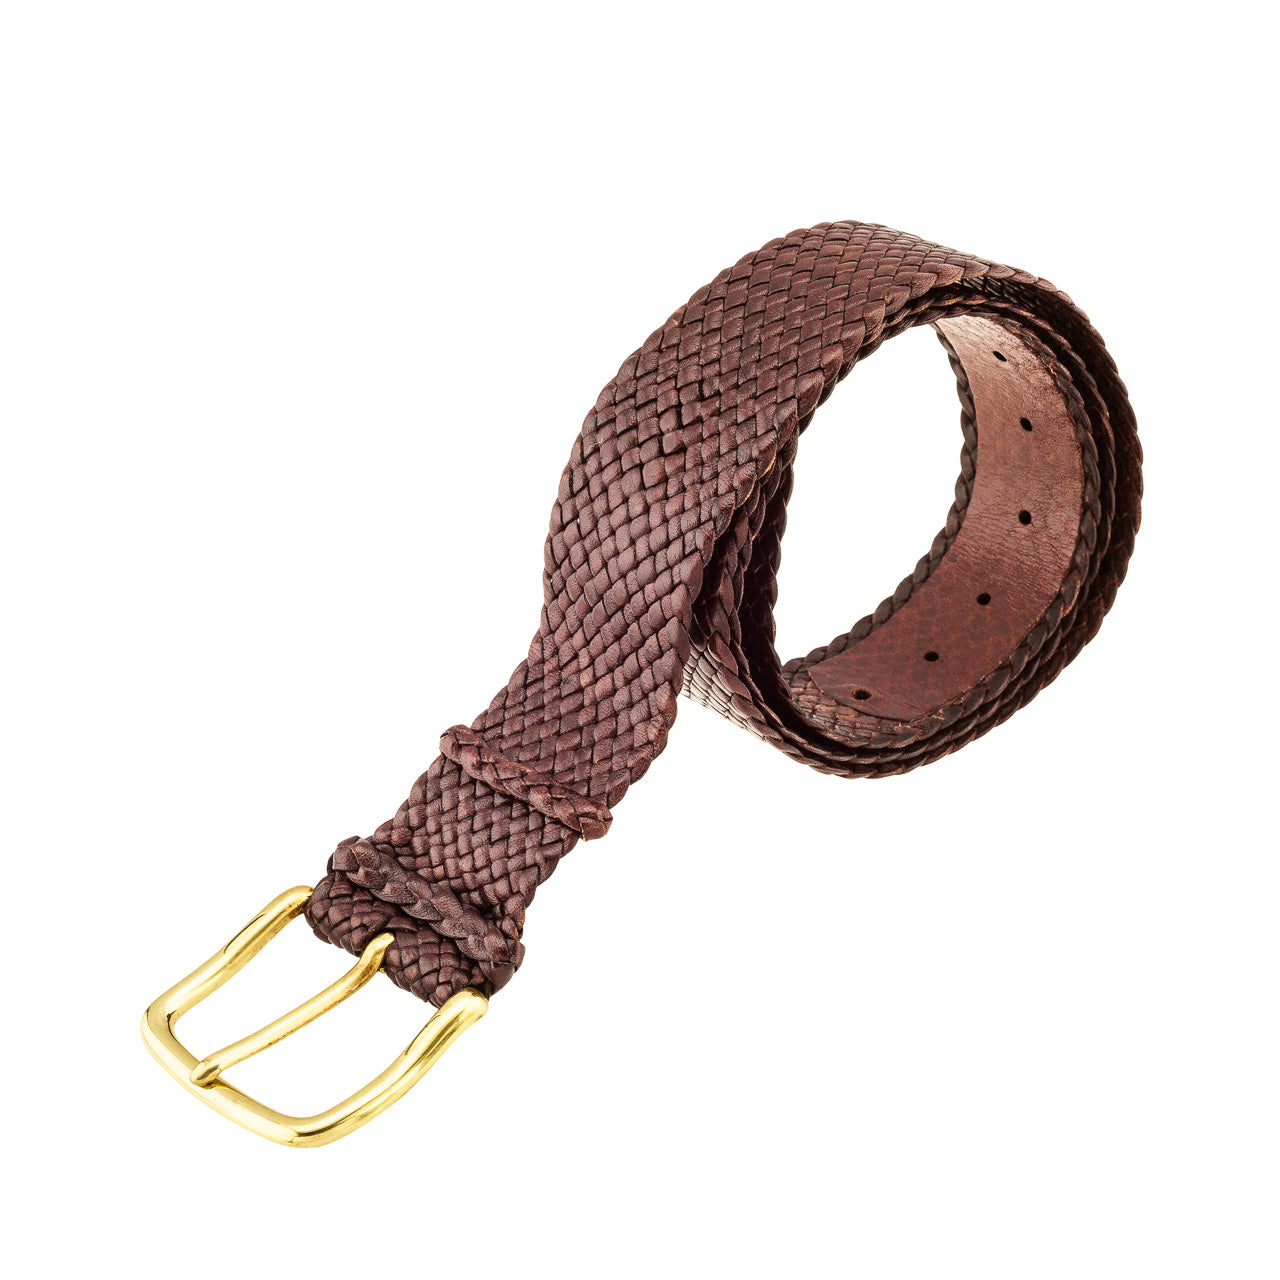 Tan Mens Sandown belt: Premium Kangaroo Leather belt, 14 strands, hand-plaited in Brisbane, Australia. Timeless, refined outback feel. Available in Black or Tan.